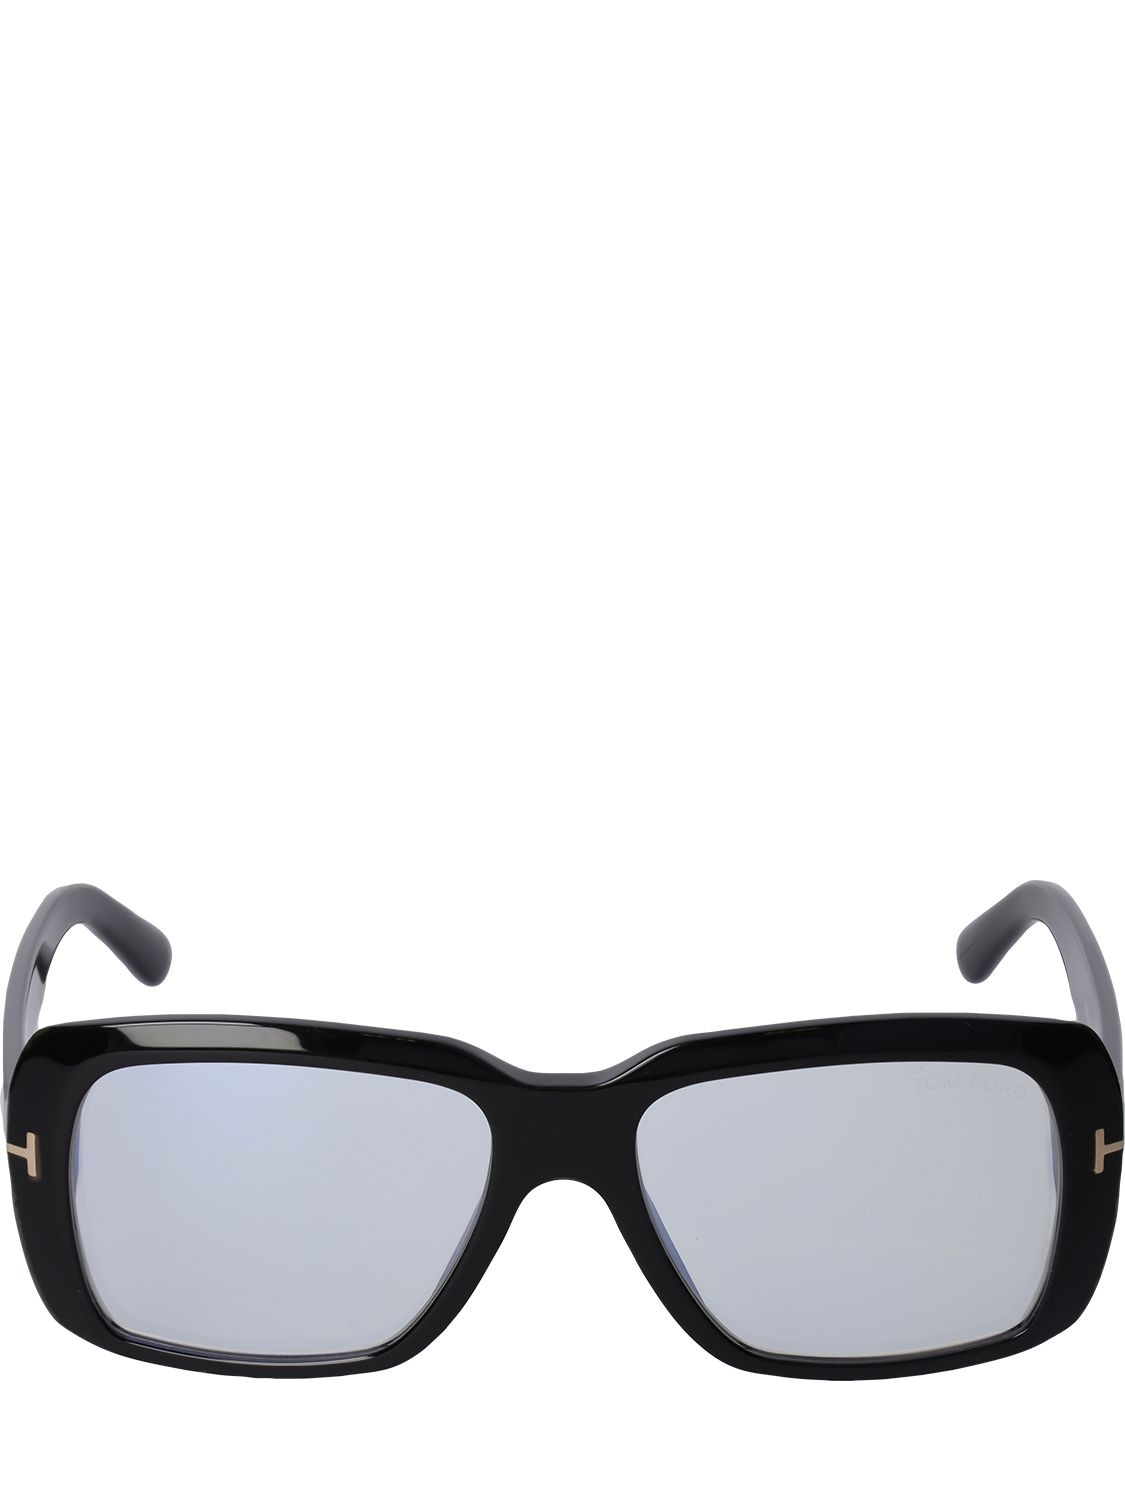 Black Square Sunglasses Ssense Donna Accessori Occhiali da sole 